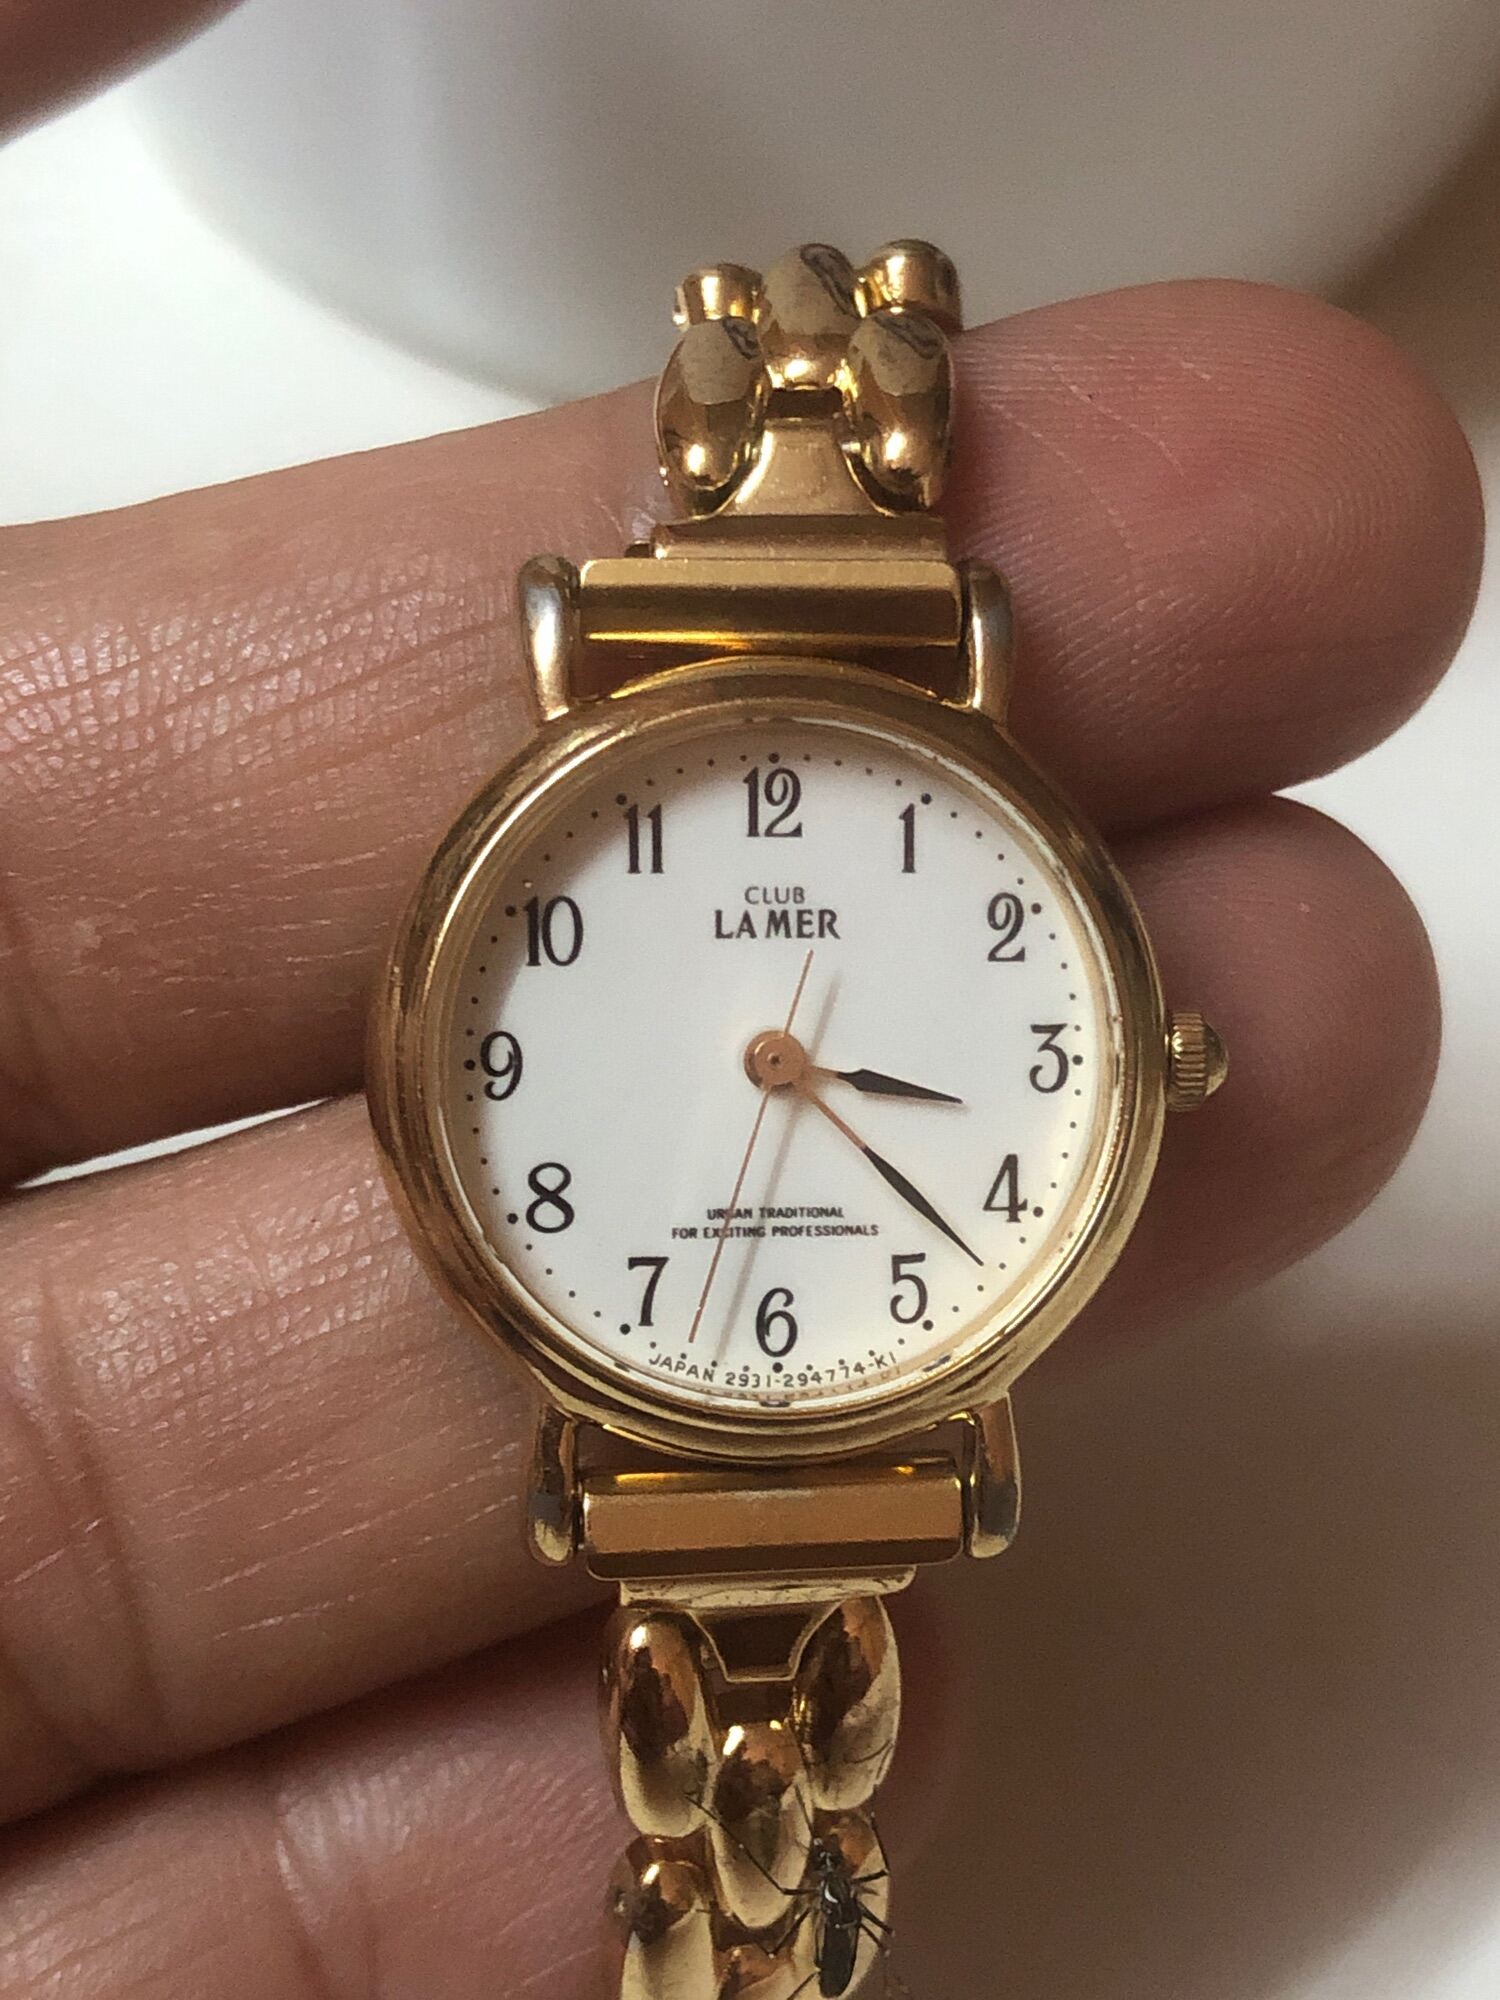 Đồng hồ CLUB LA MER một trong những dòng sản phẩm đến từ CITIZEN